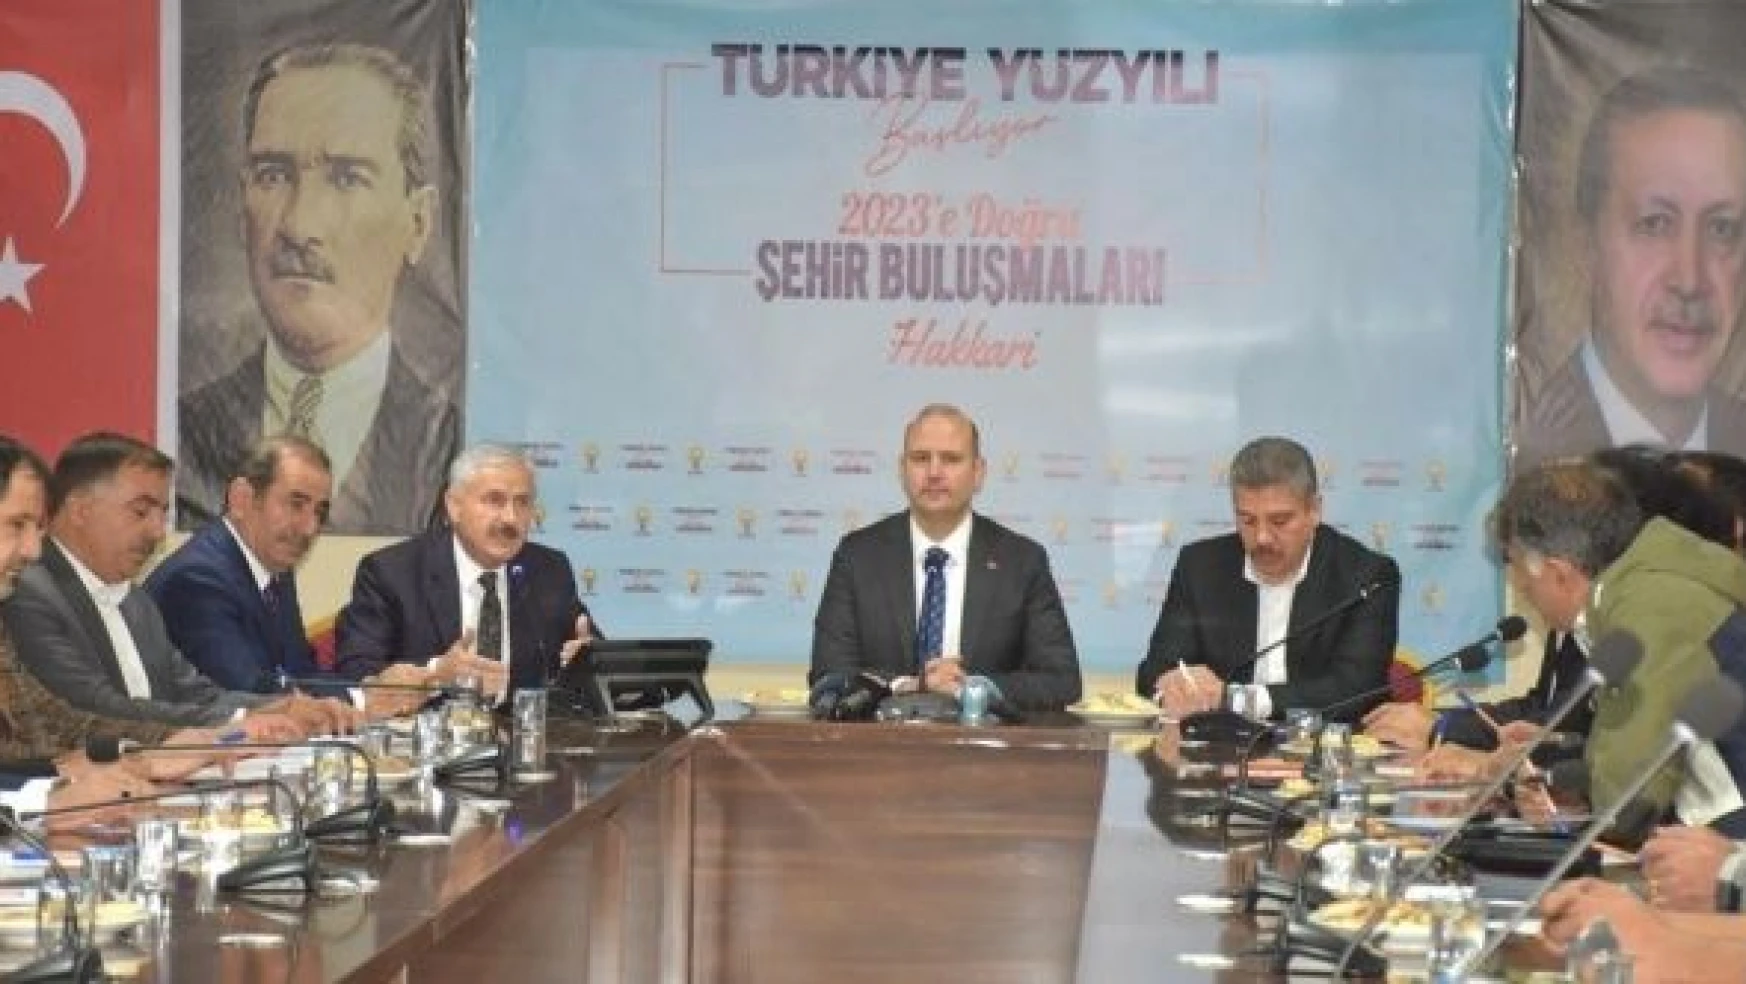 AK Parti Genel Başkan Yardımcısı İleri: "Altılı masa adayını bile belirlemedi"